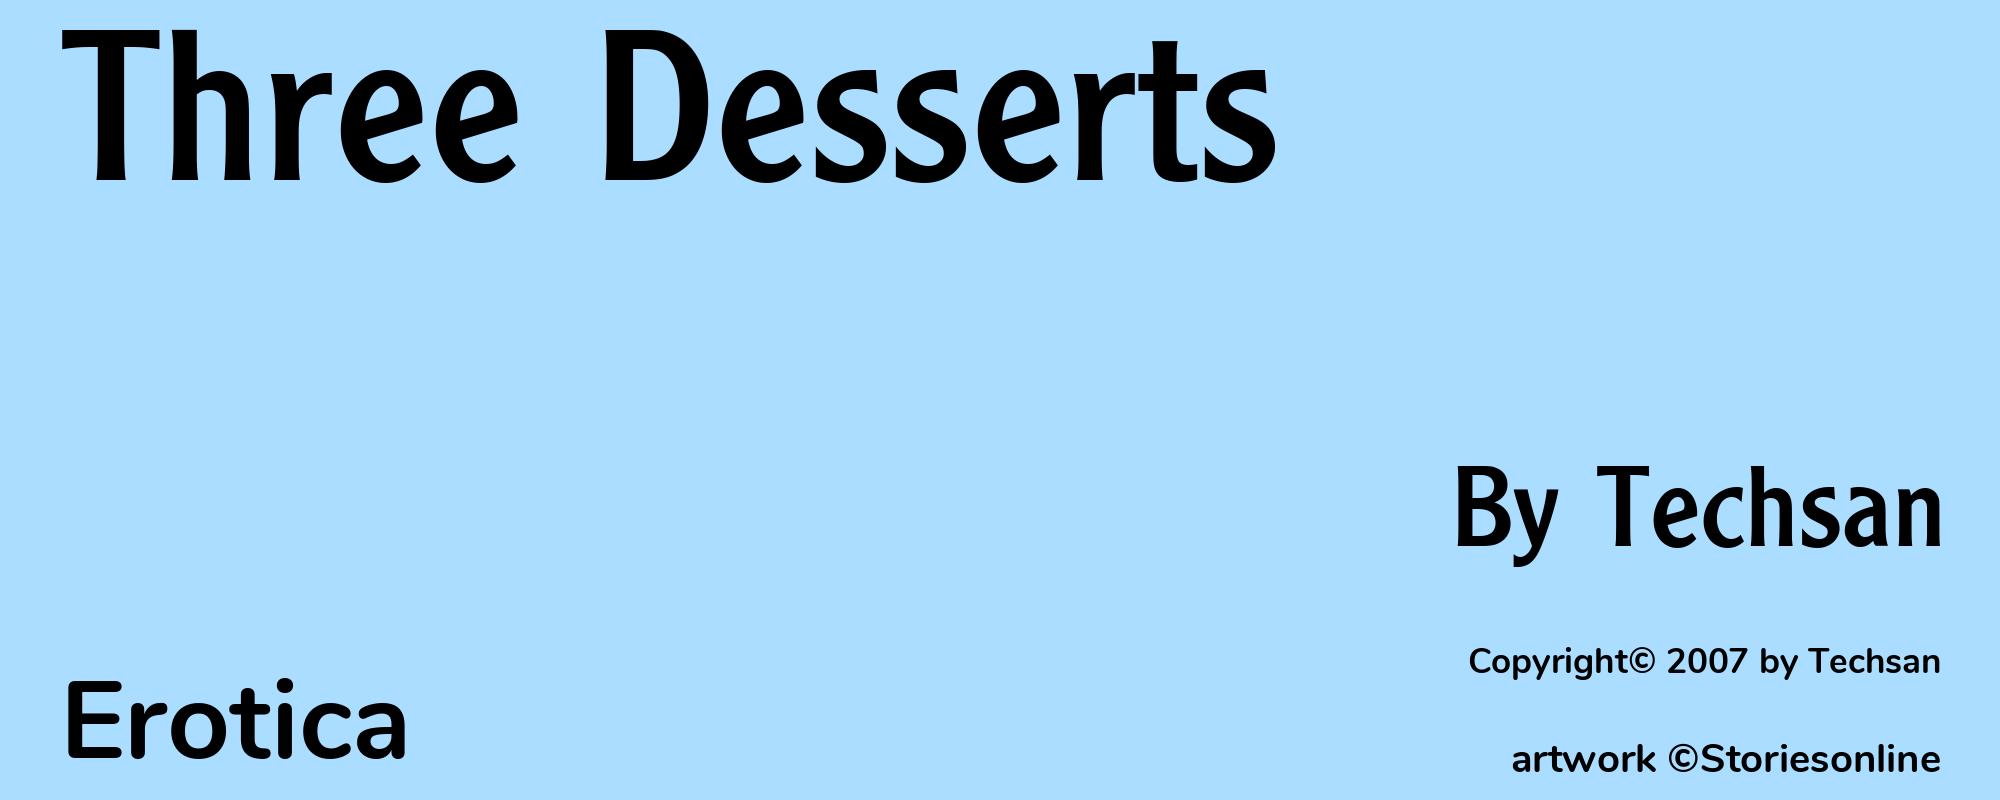 Three Desserts - Cover